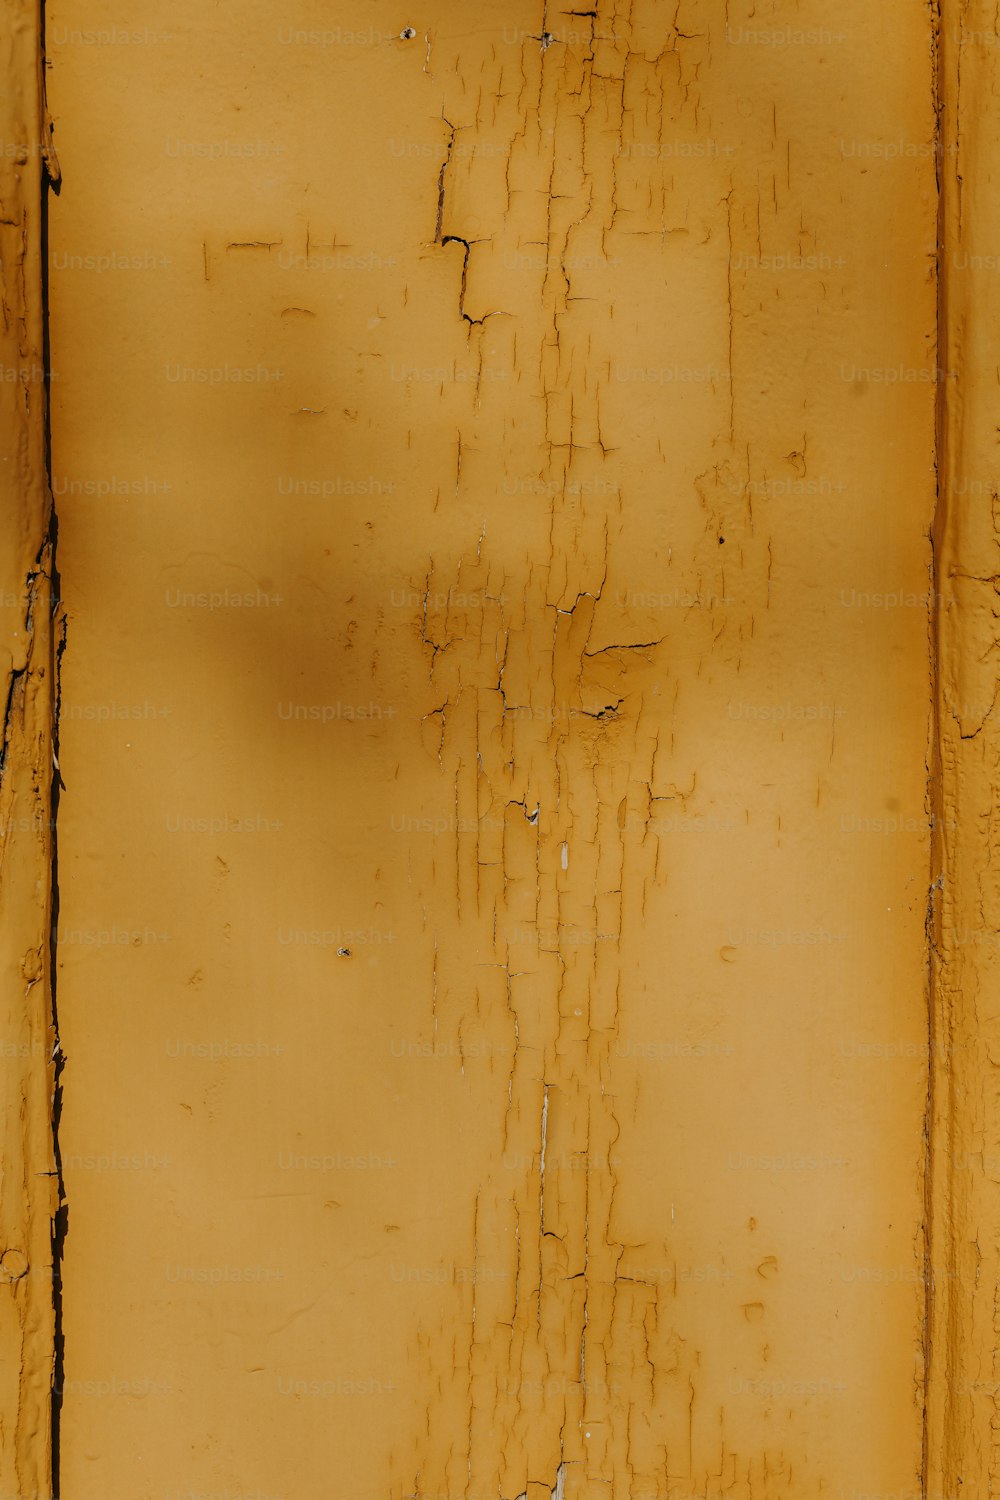 페인트가 벗겨진 노란색 벽